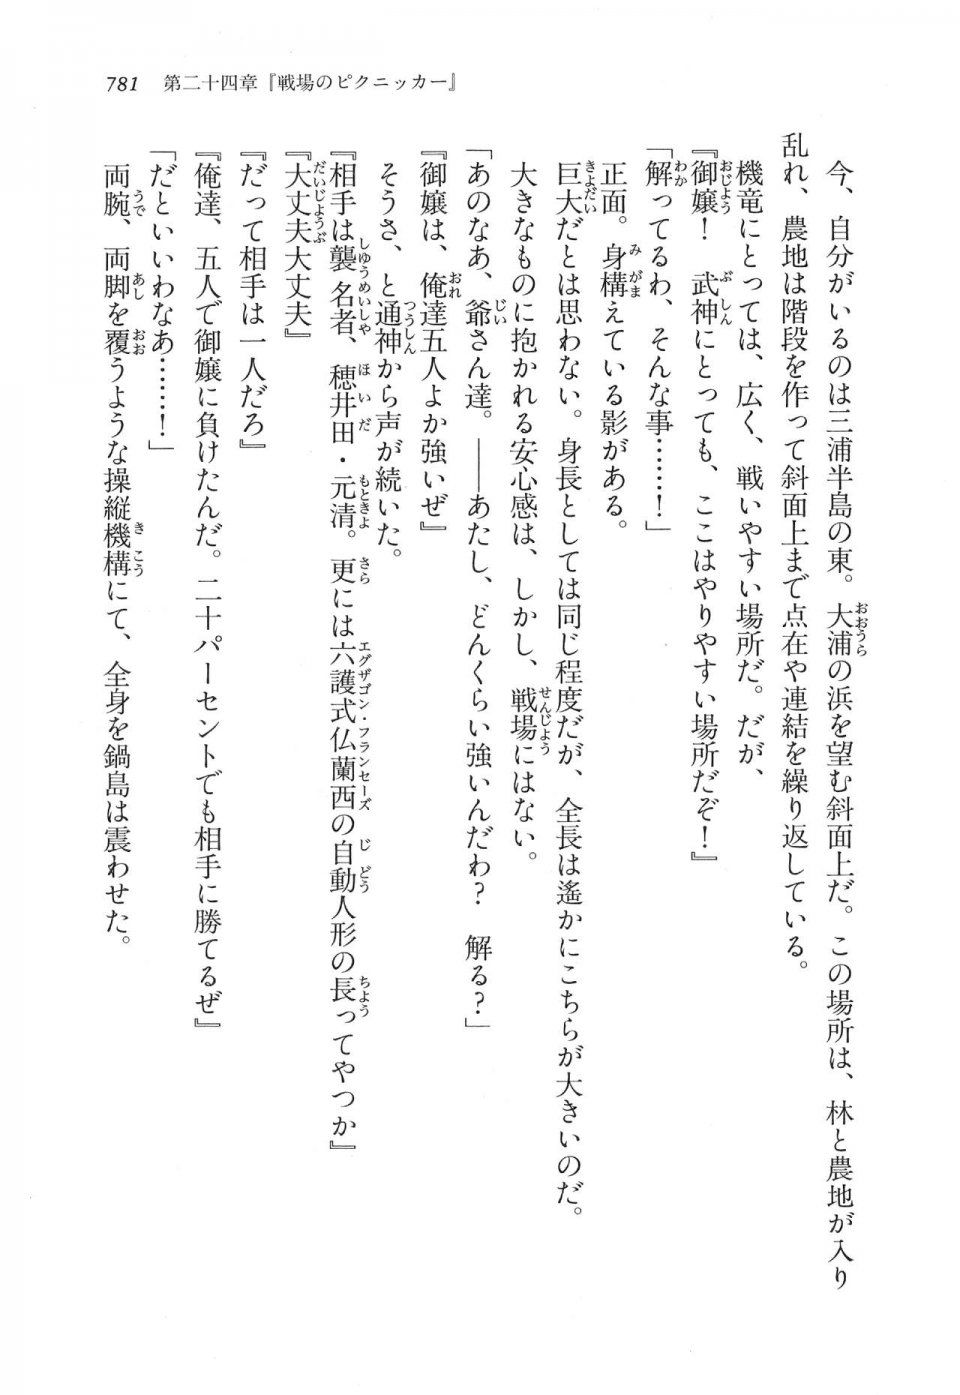 Kyoukai Senjou no Horizon LN Vol 16(7A) - Photo #781